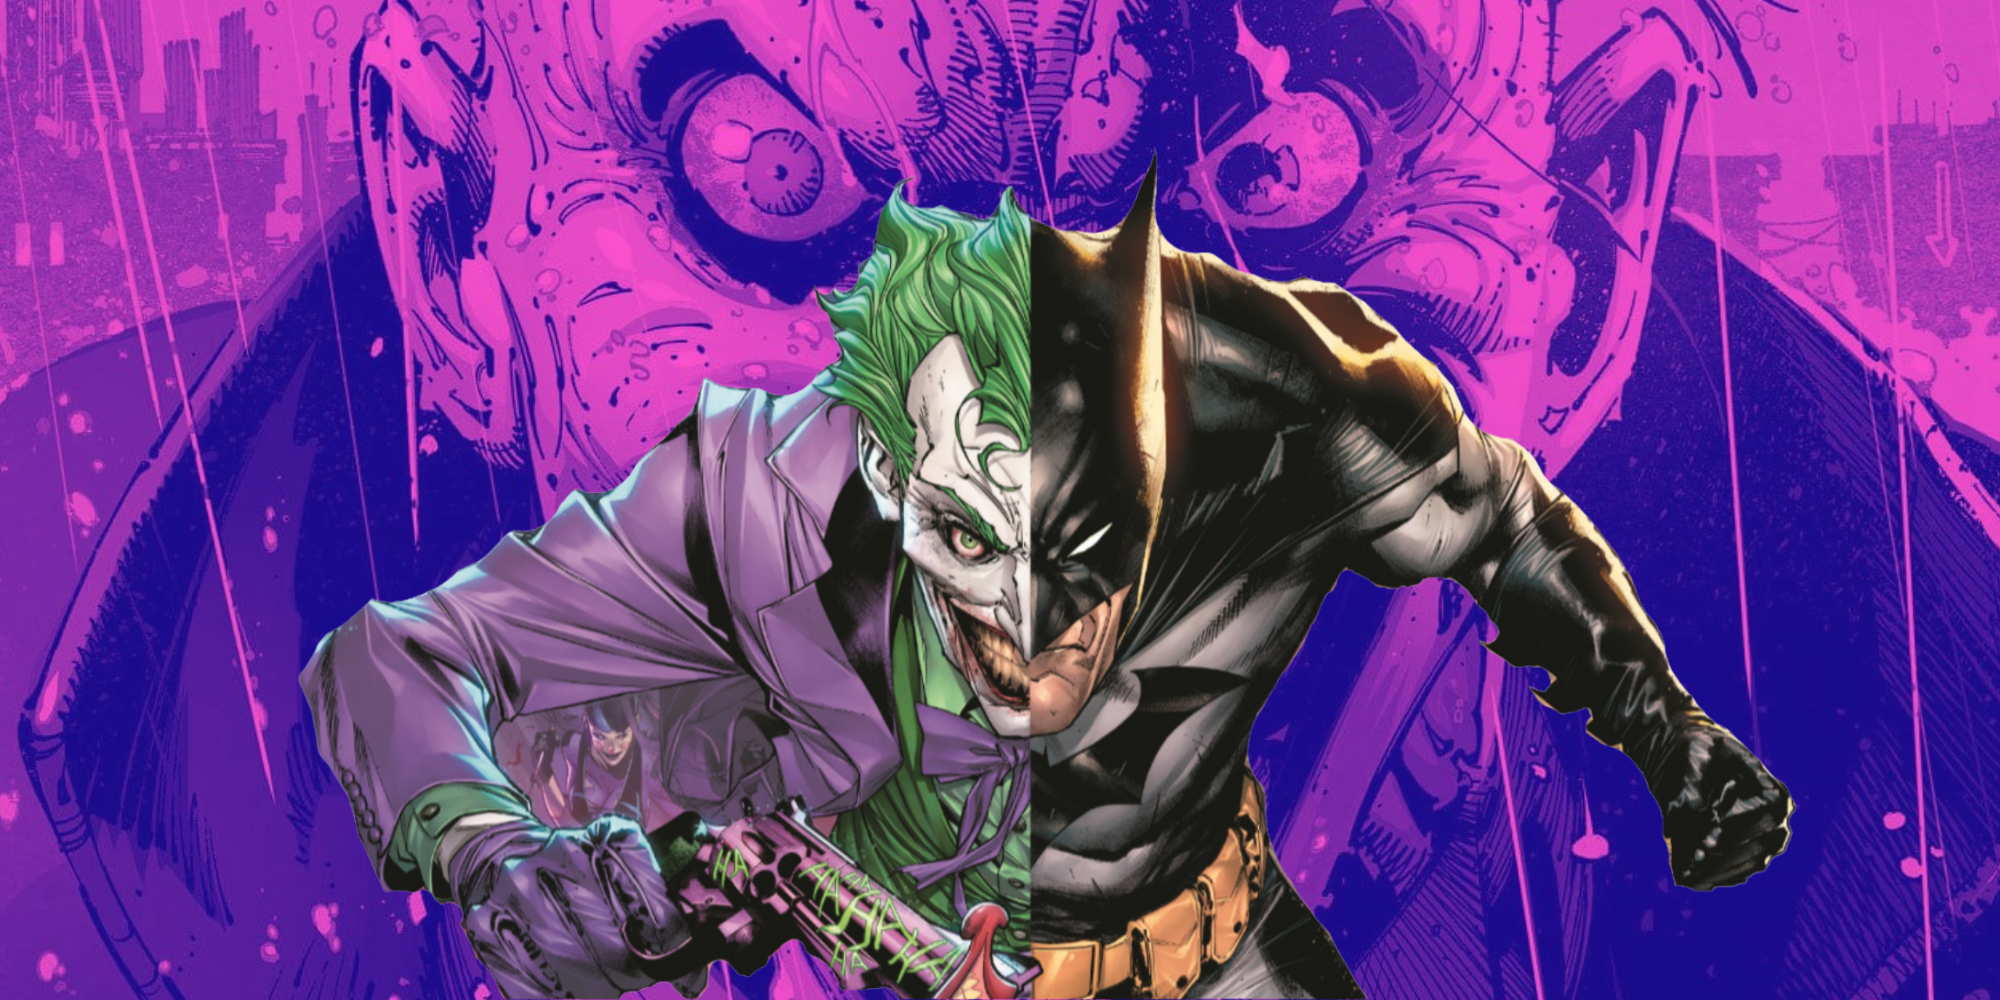 Doodle Jump DC - Batman vs Joker 